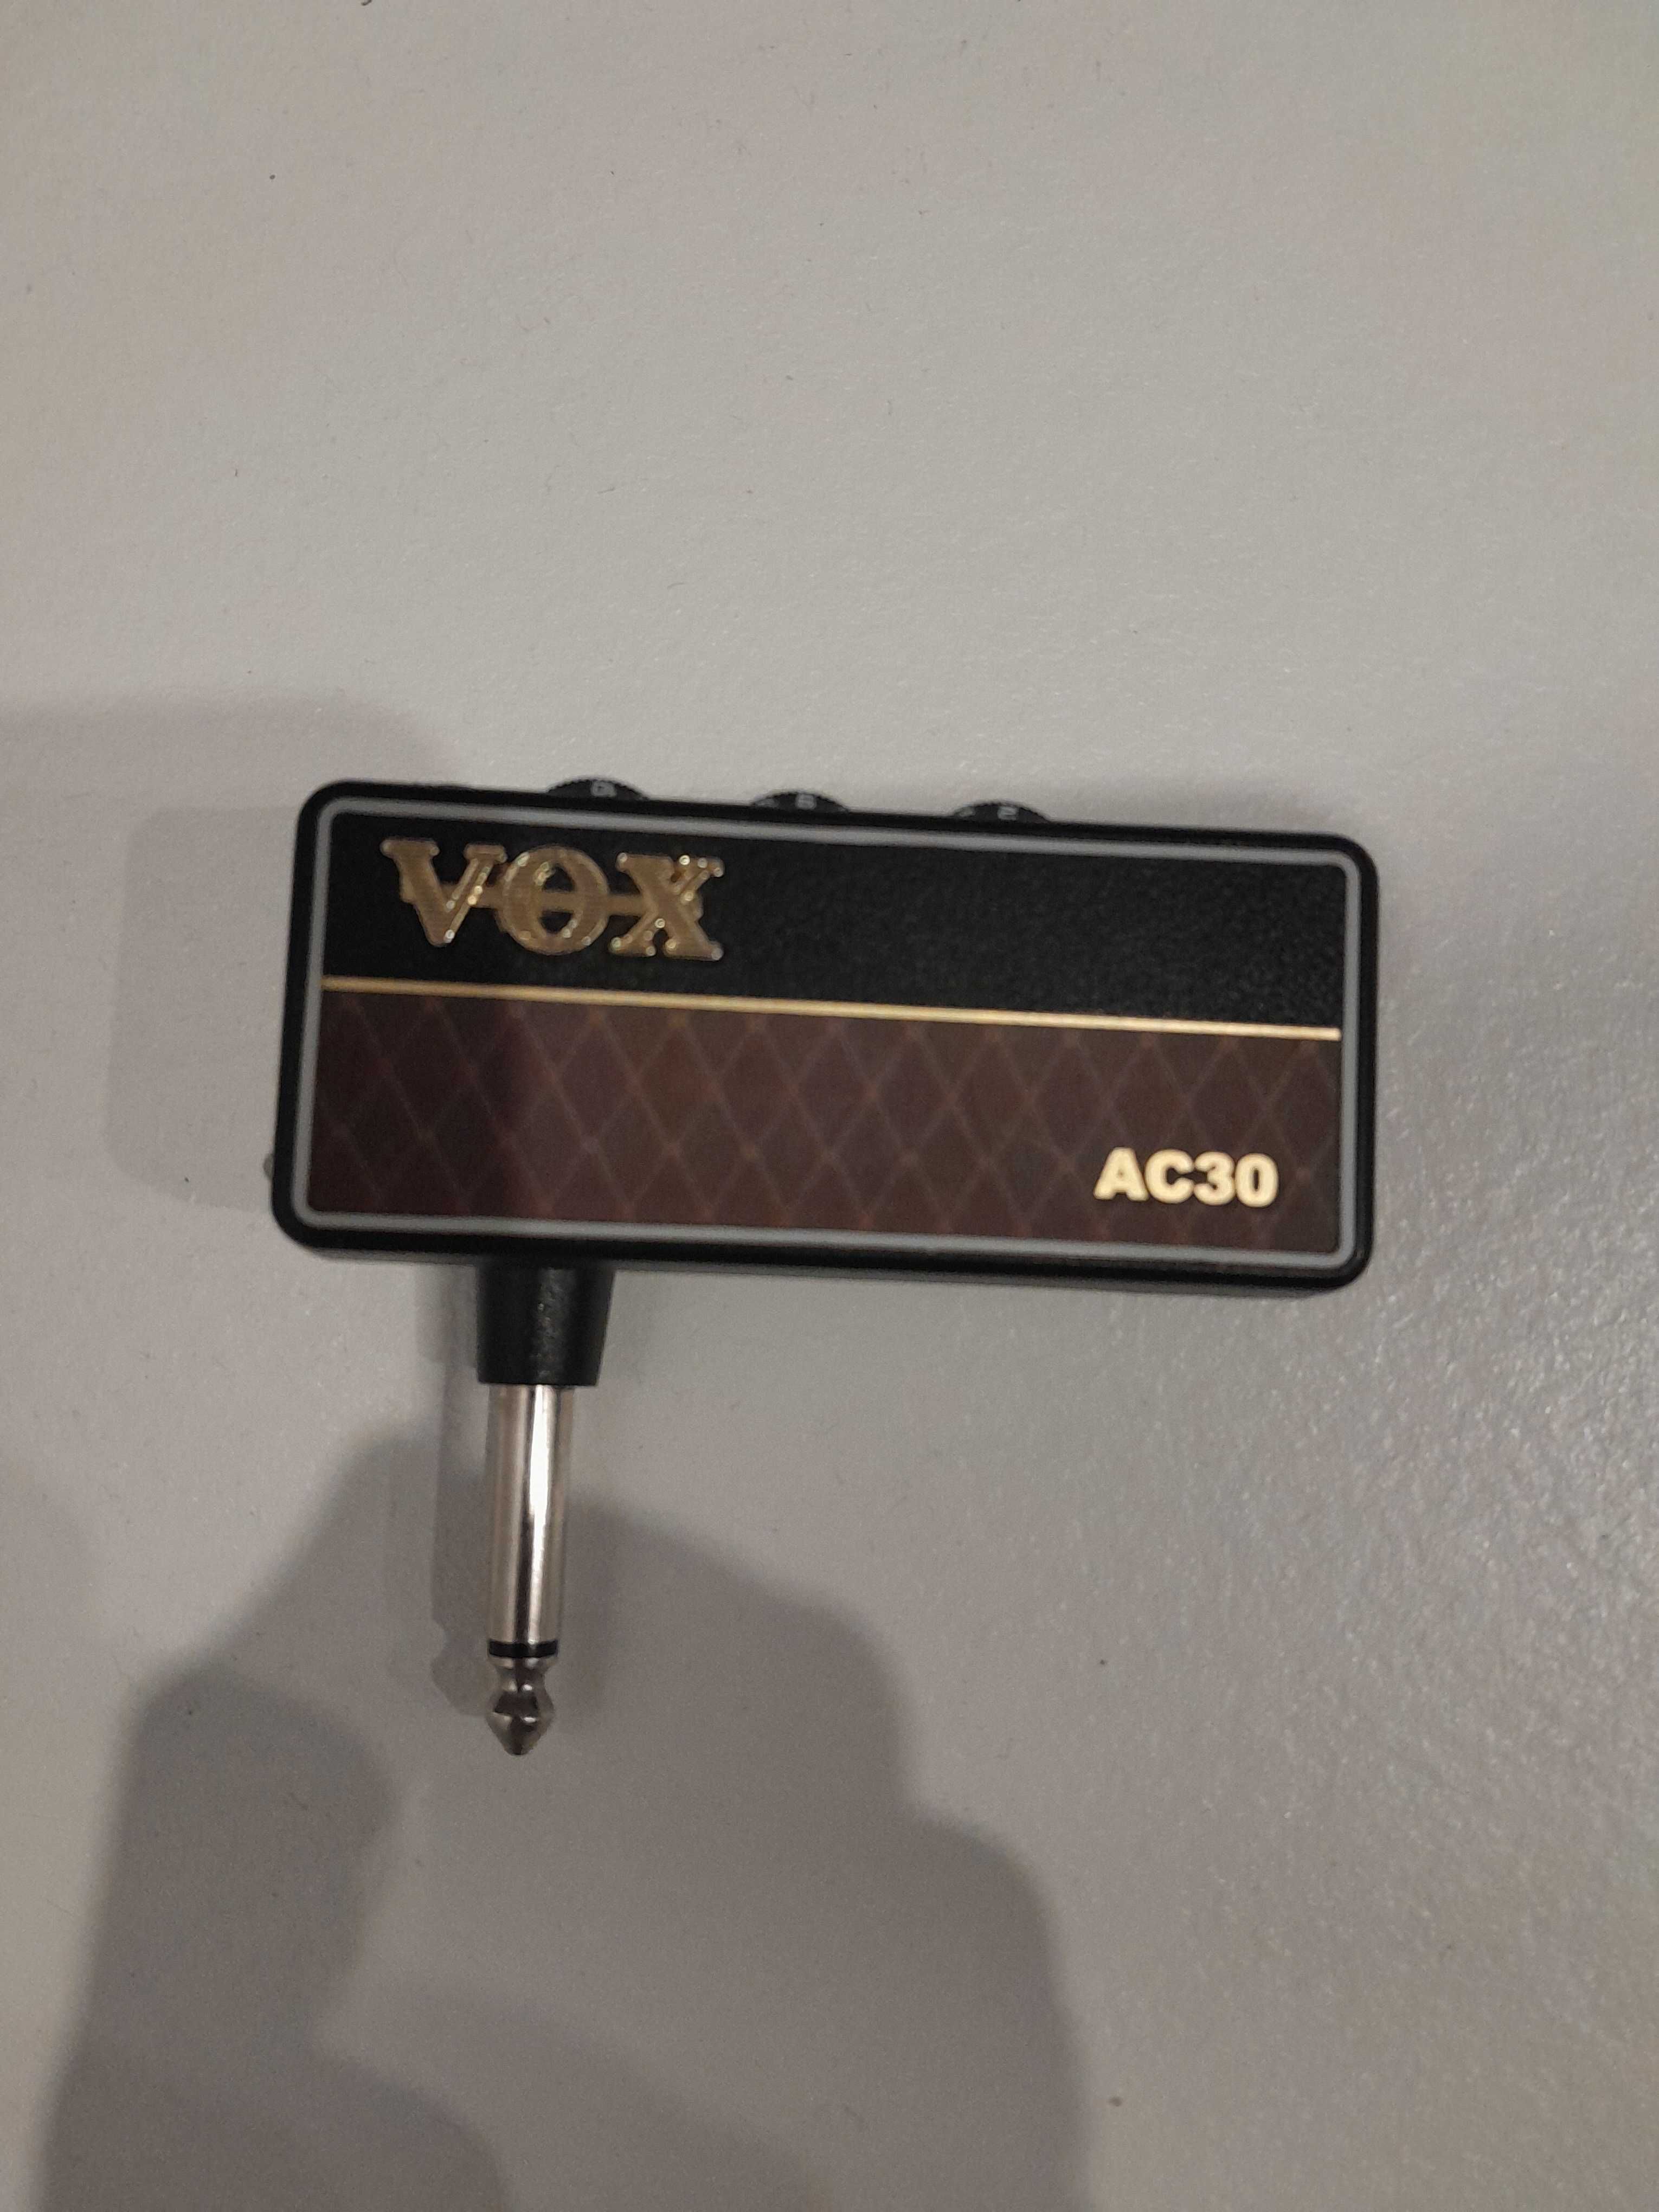 Vox amplug2 ac30 Підсилювачі для навушників